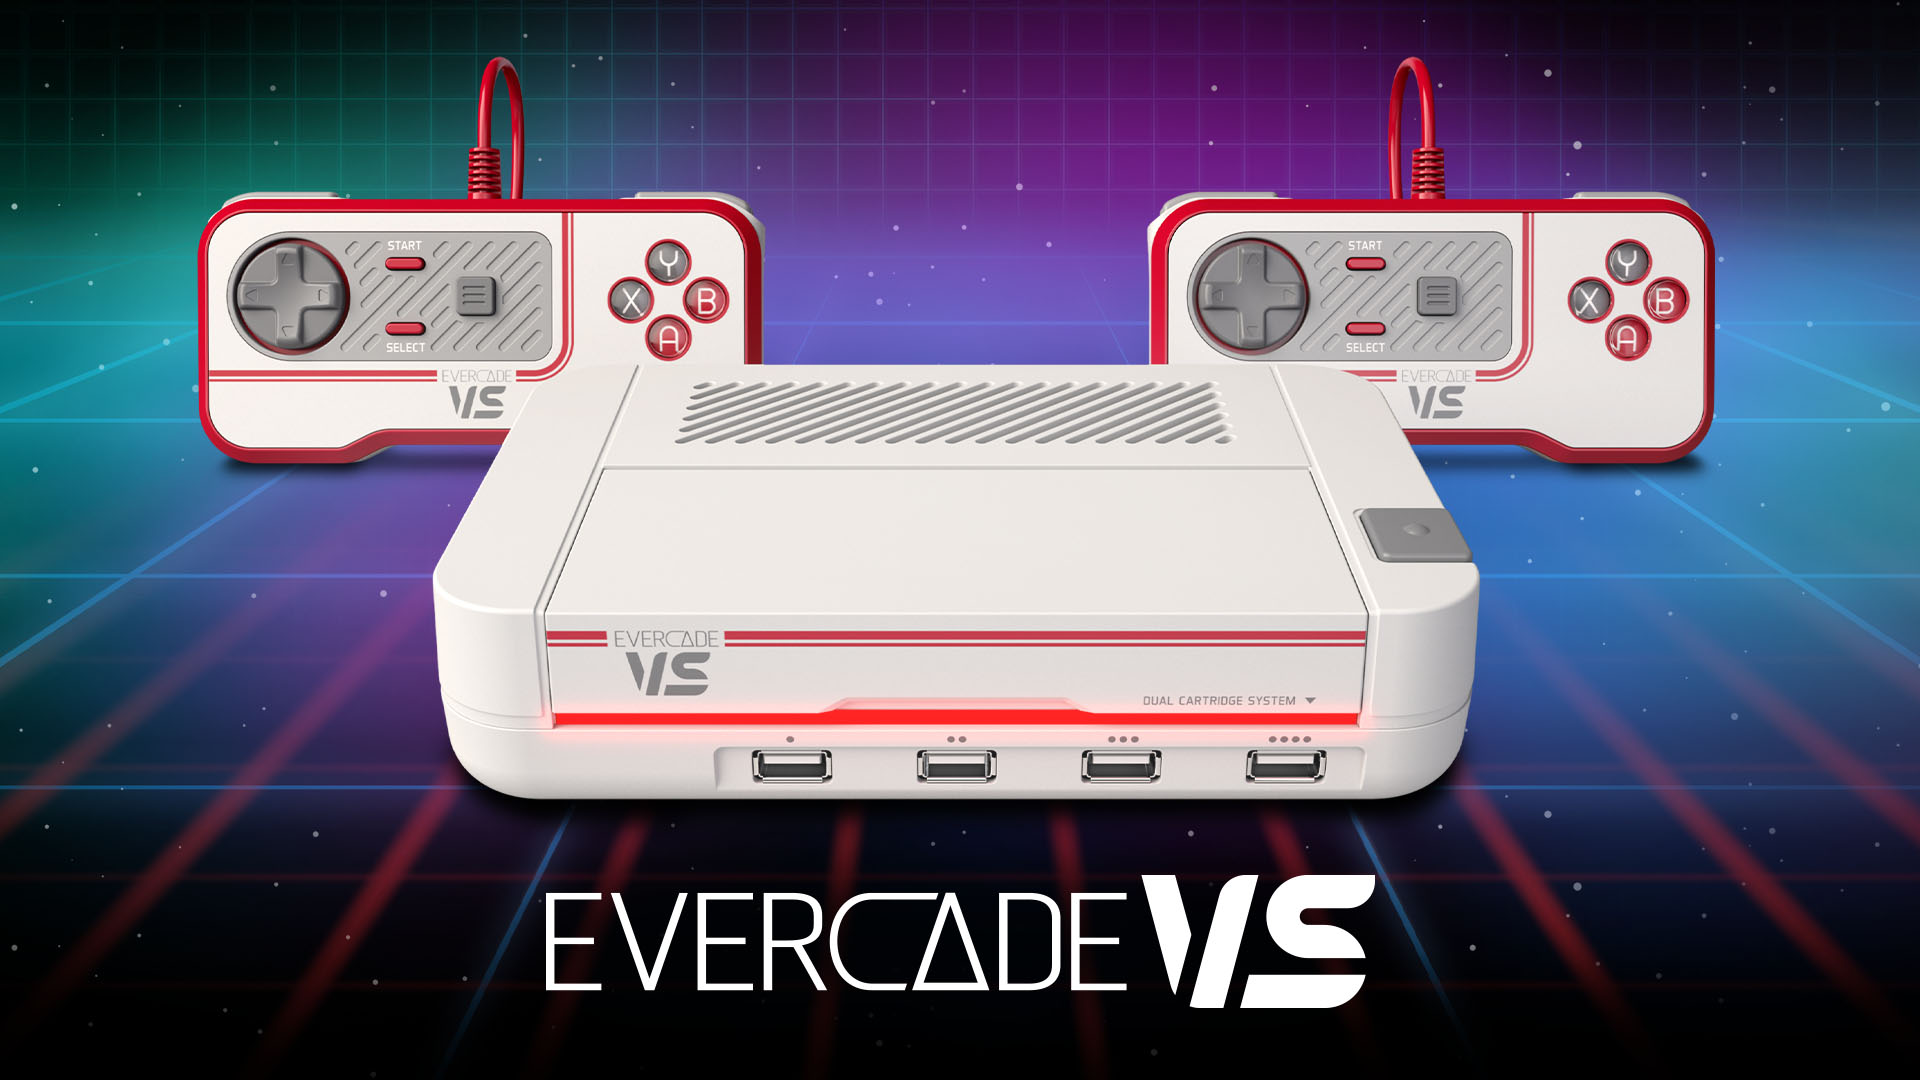 Evercade VS